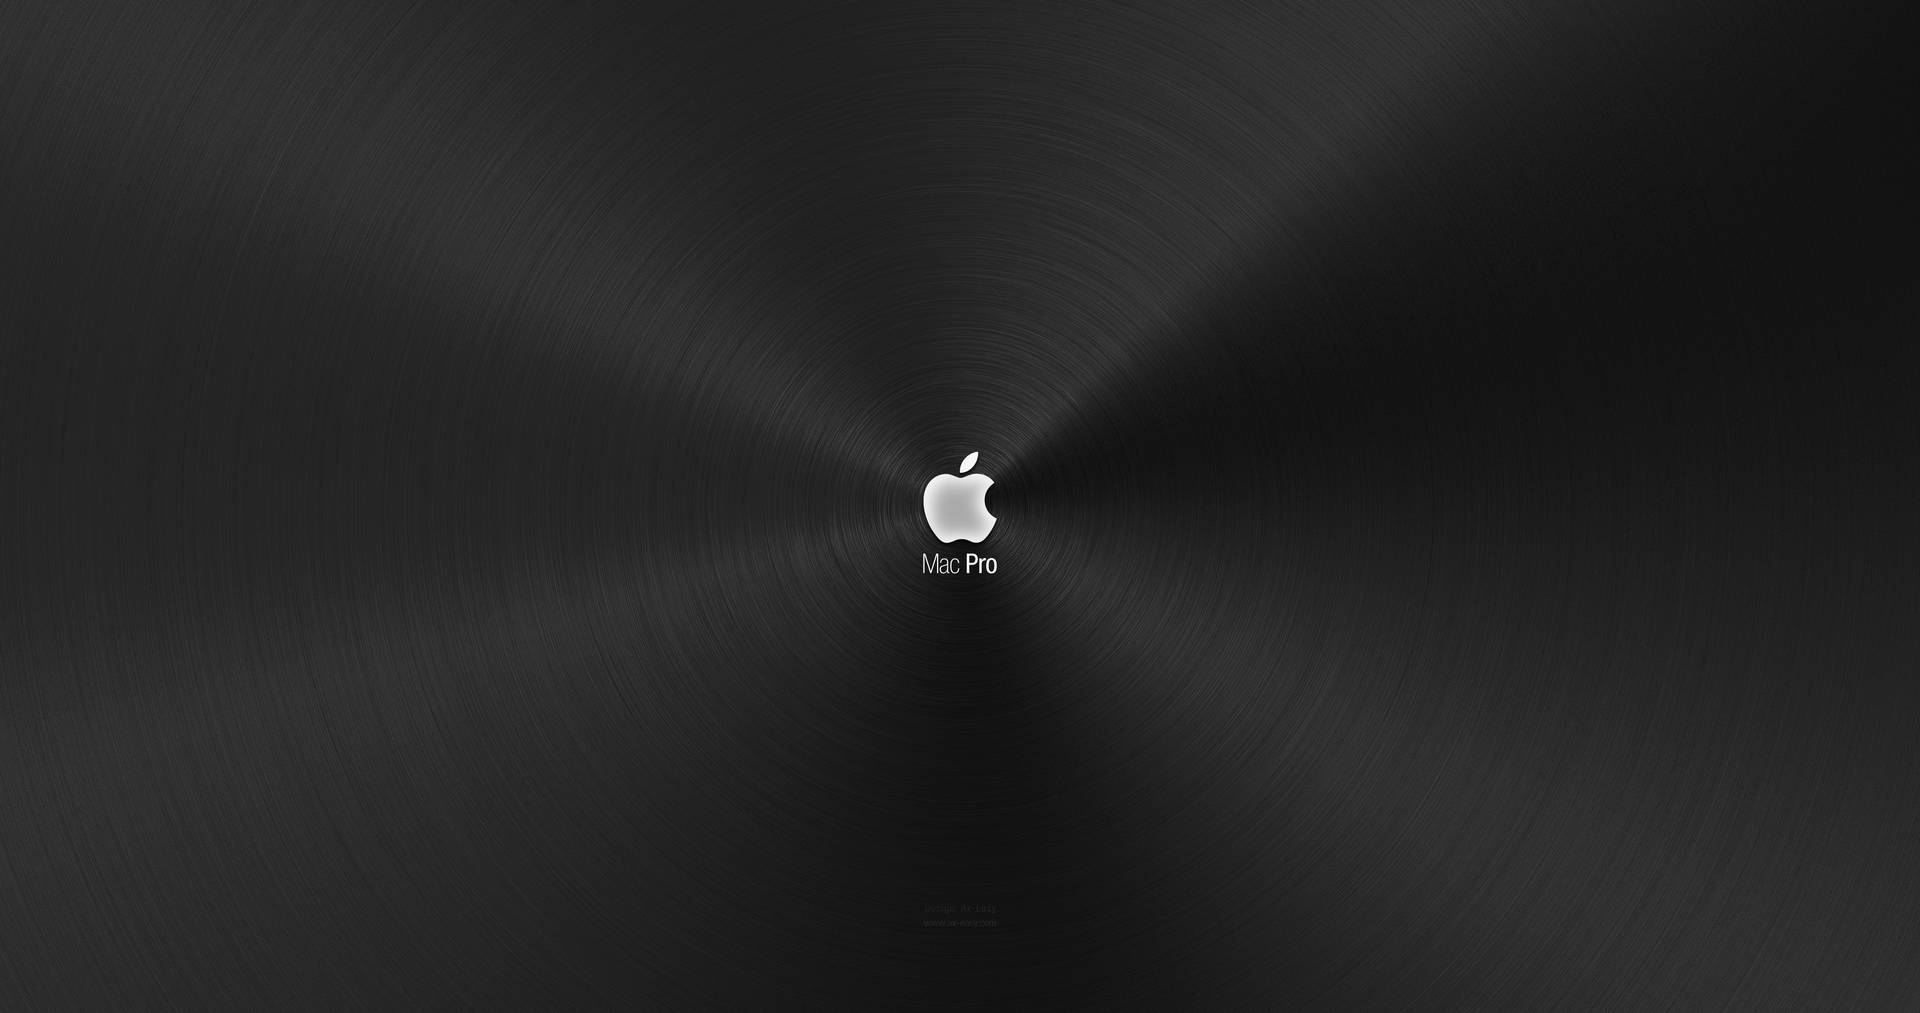 Silveraäpple-logotyp På Macbook Pro I 4k. Wallpaper